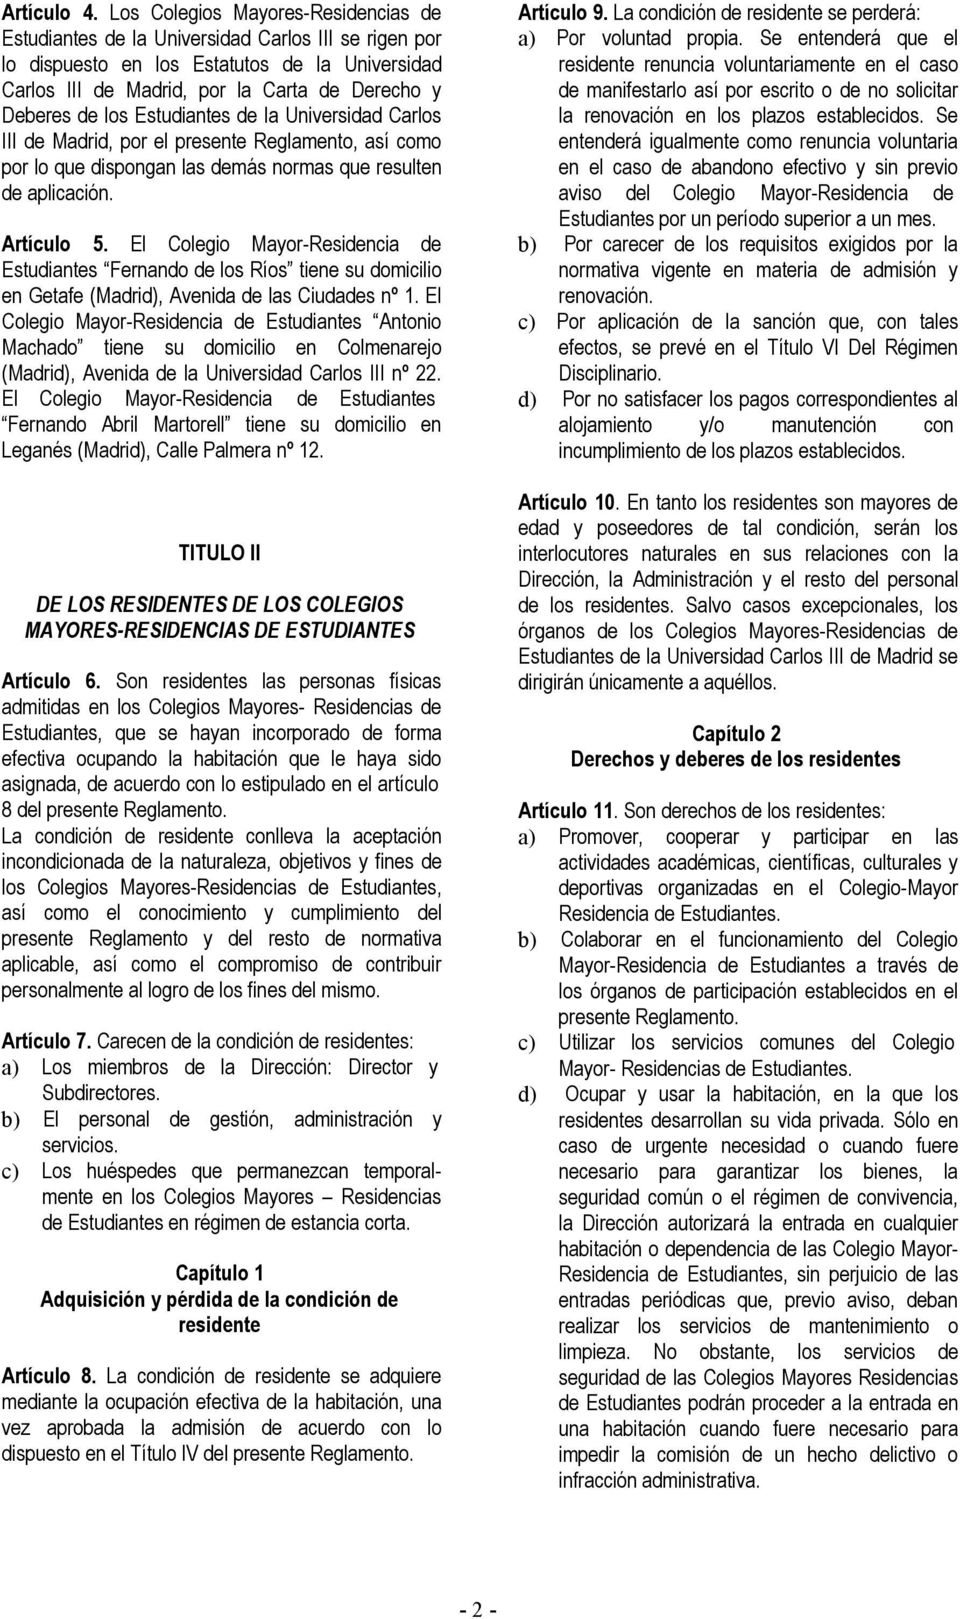 los Estudiantes de la Universidad Carlos III de Madrid, por el presente Reglamento, así como por lo que dispongan las demás normas que resulten de aplicación. Artículo 5.